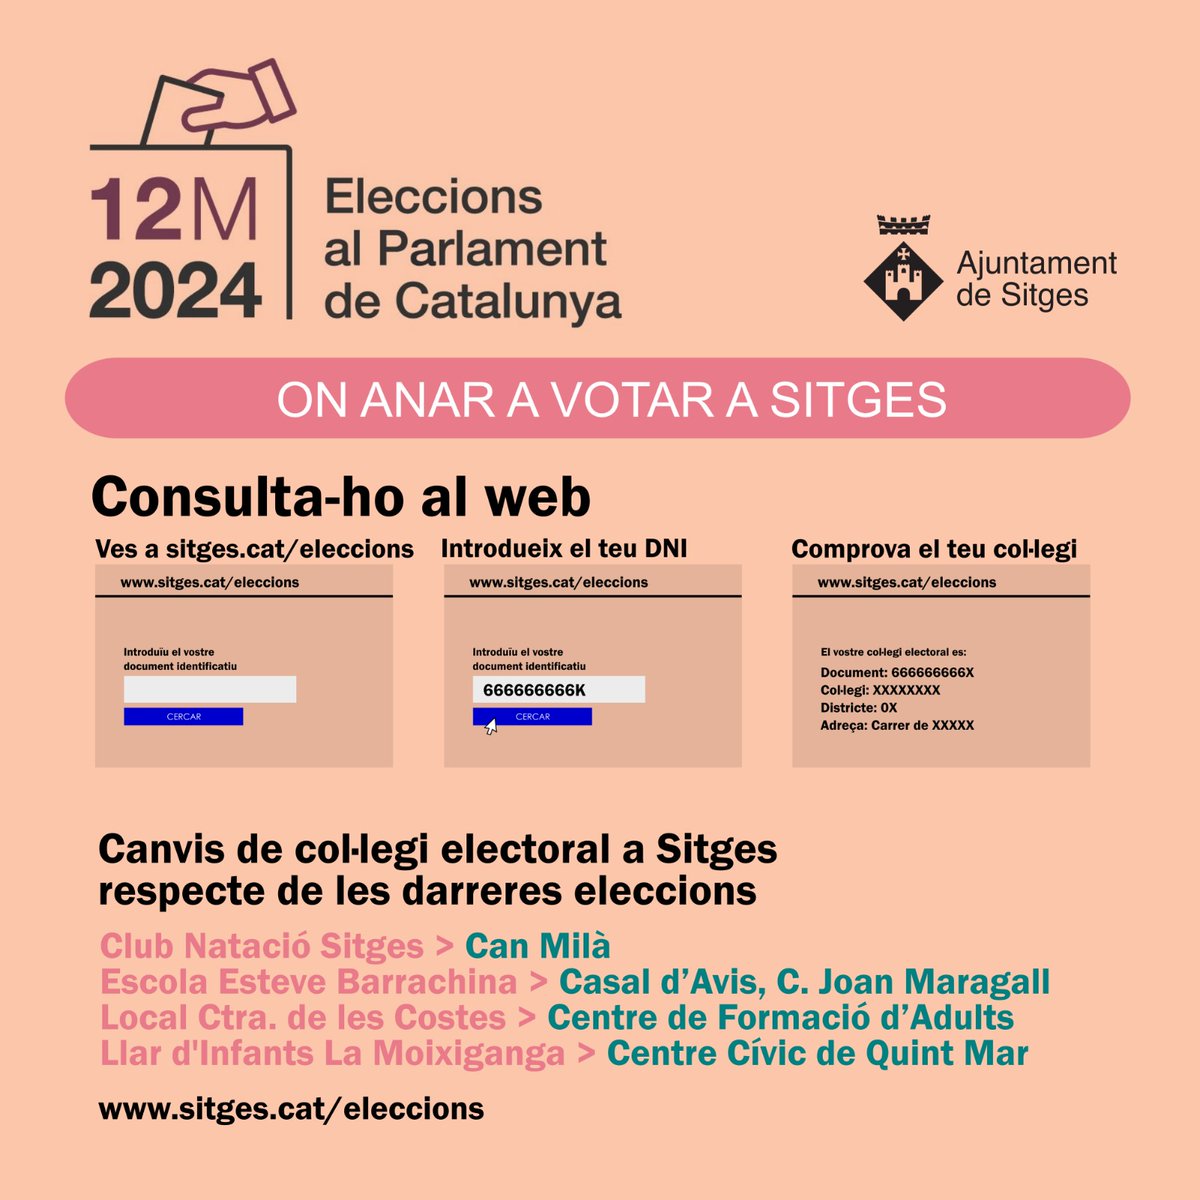 On anar a votar a #Sitges? ℹ️Canvis de col·legis: 🟩Can Milà - 🟥Club Natació 🟩Casal d'Avis Joan Maragall - 🟥Barrachina 🟩Centre de Formació d'Adults - 🟥Local municipal 🟩C. C. Quint Mar - 🟥La Moixiganga 👉Sitges.cat/eleccions